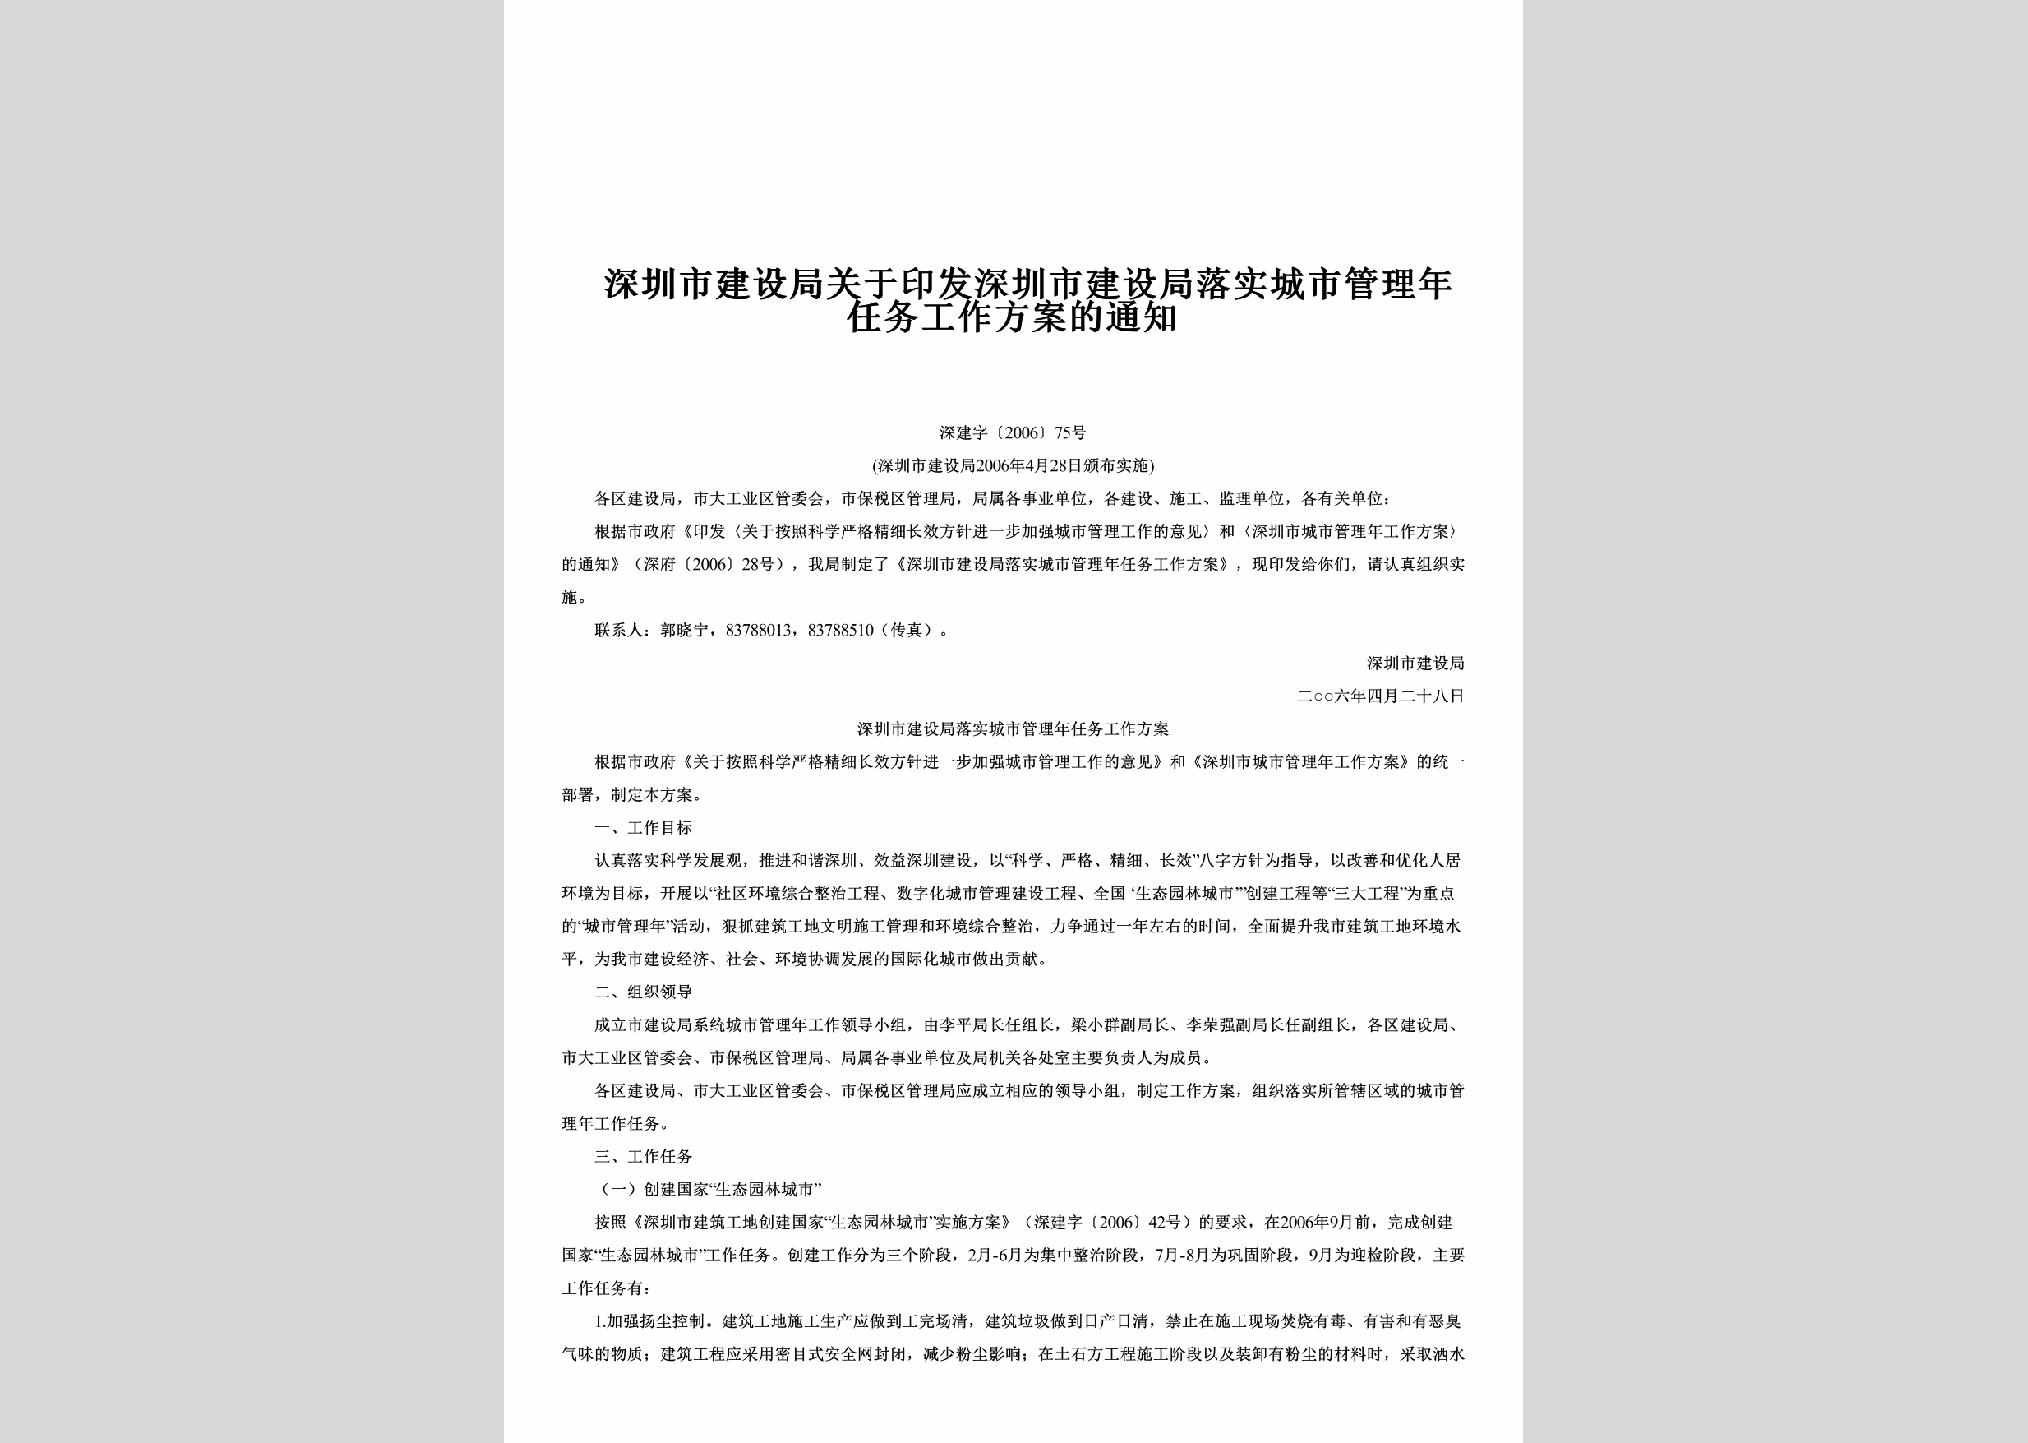 深建字[2006]75号：关于印发深圳市建设局落实城市管理年任务工作方案的通知